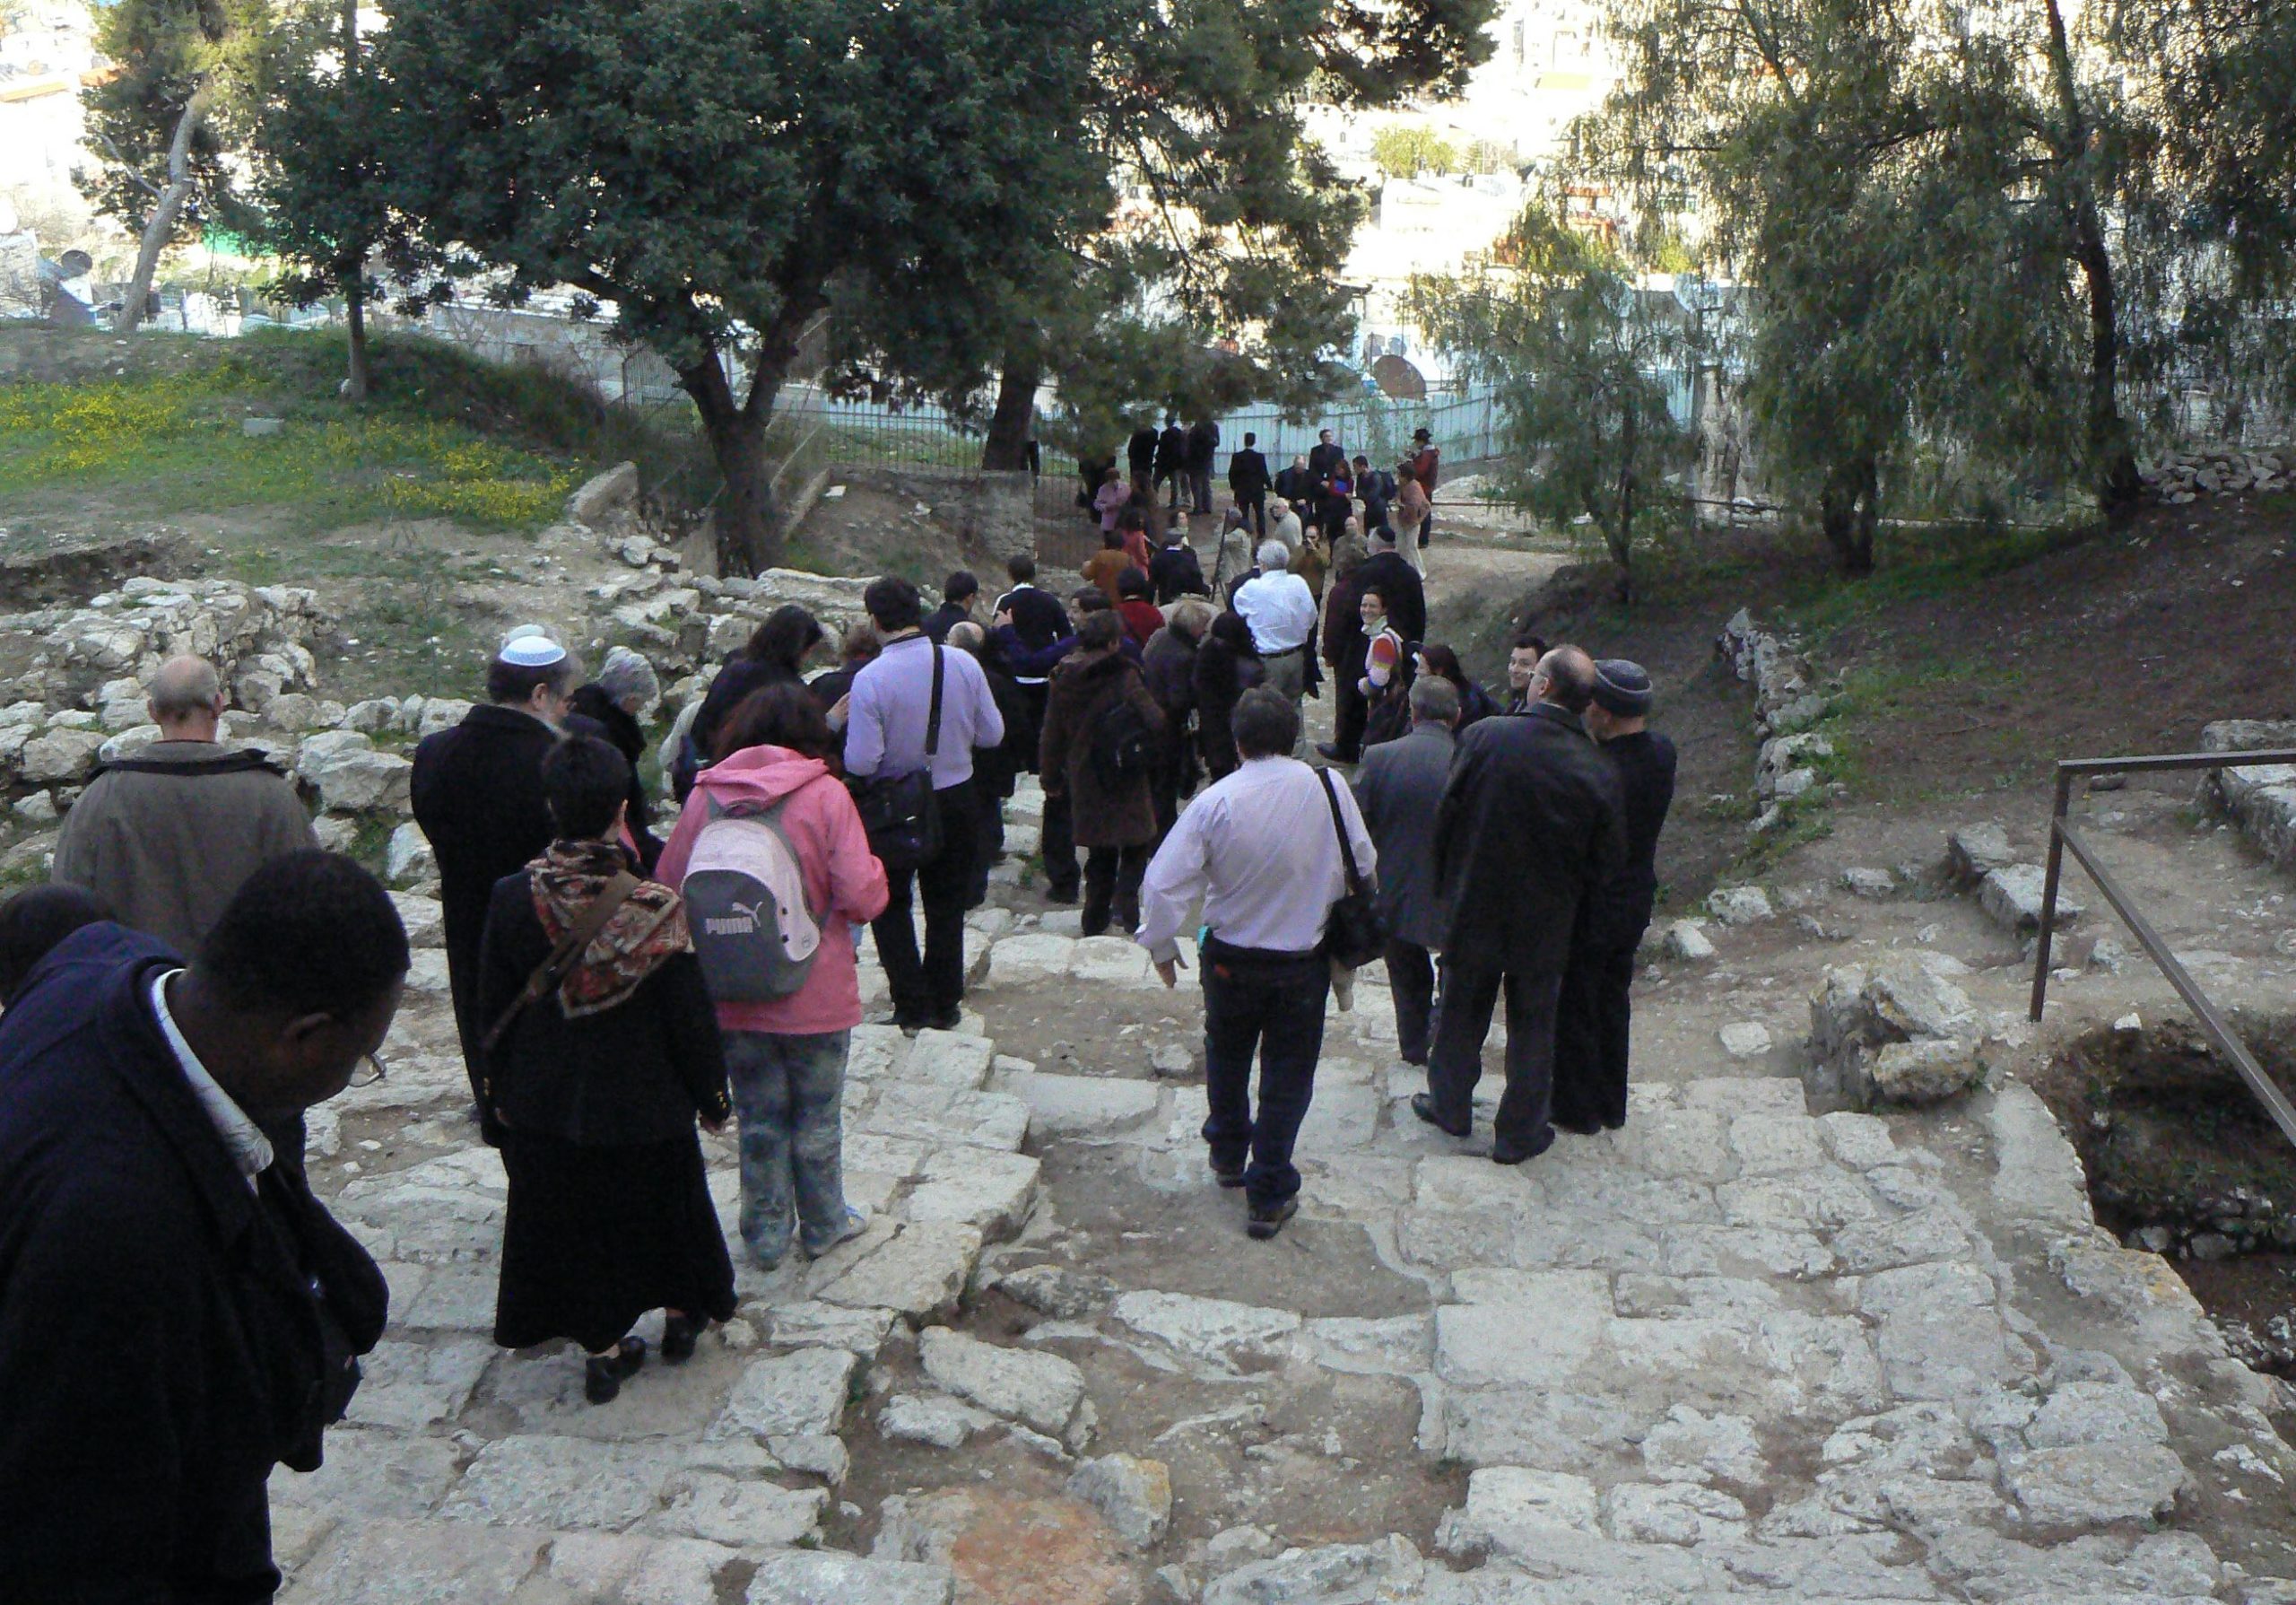 Marcher ensemble à Jérusalem  Réflexions sur un congrès judéo-chrétien.